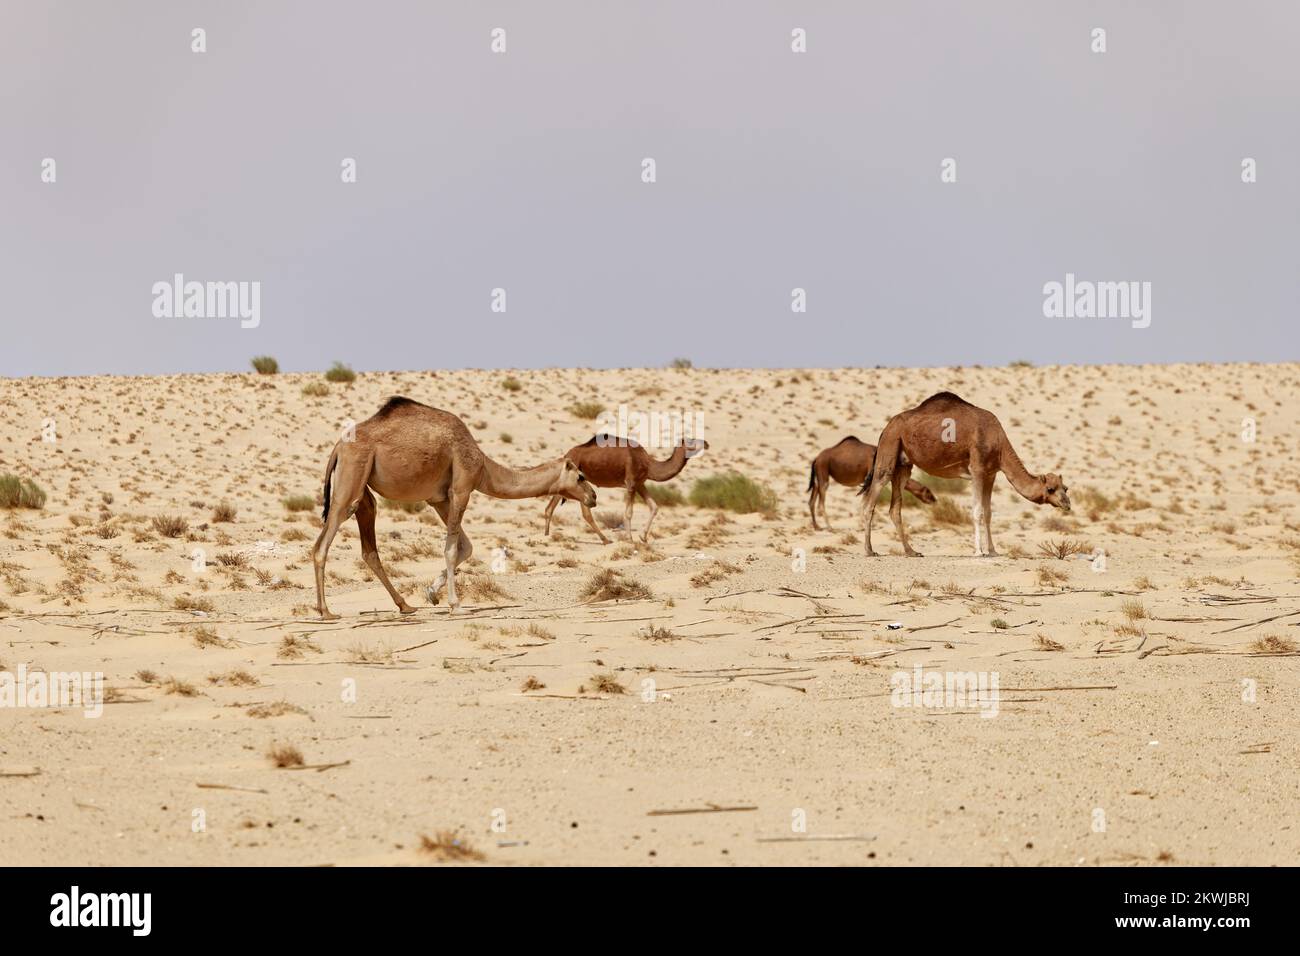 Un groupe de chameaux dans le désert. Animaux sauvages dans leur habitat naturel. Paysages sauvages et arides. Voyage et tourisme destination dans le désert. Banque D'Images